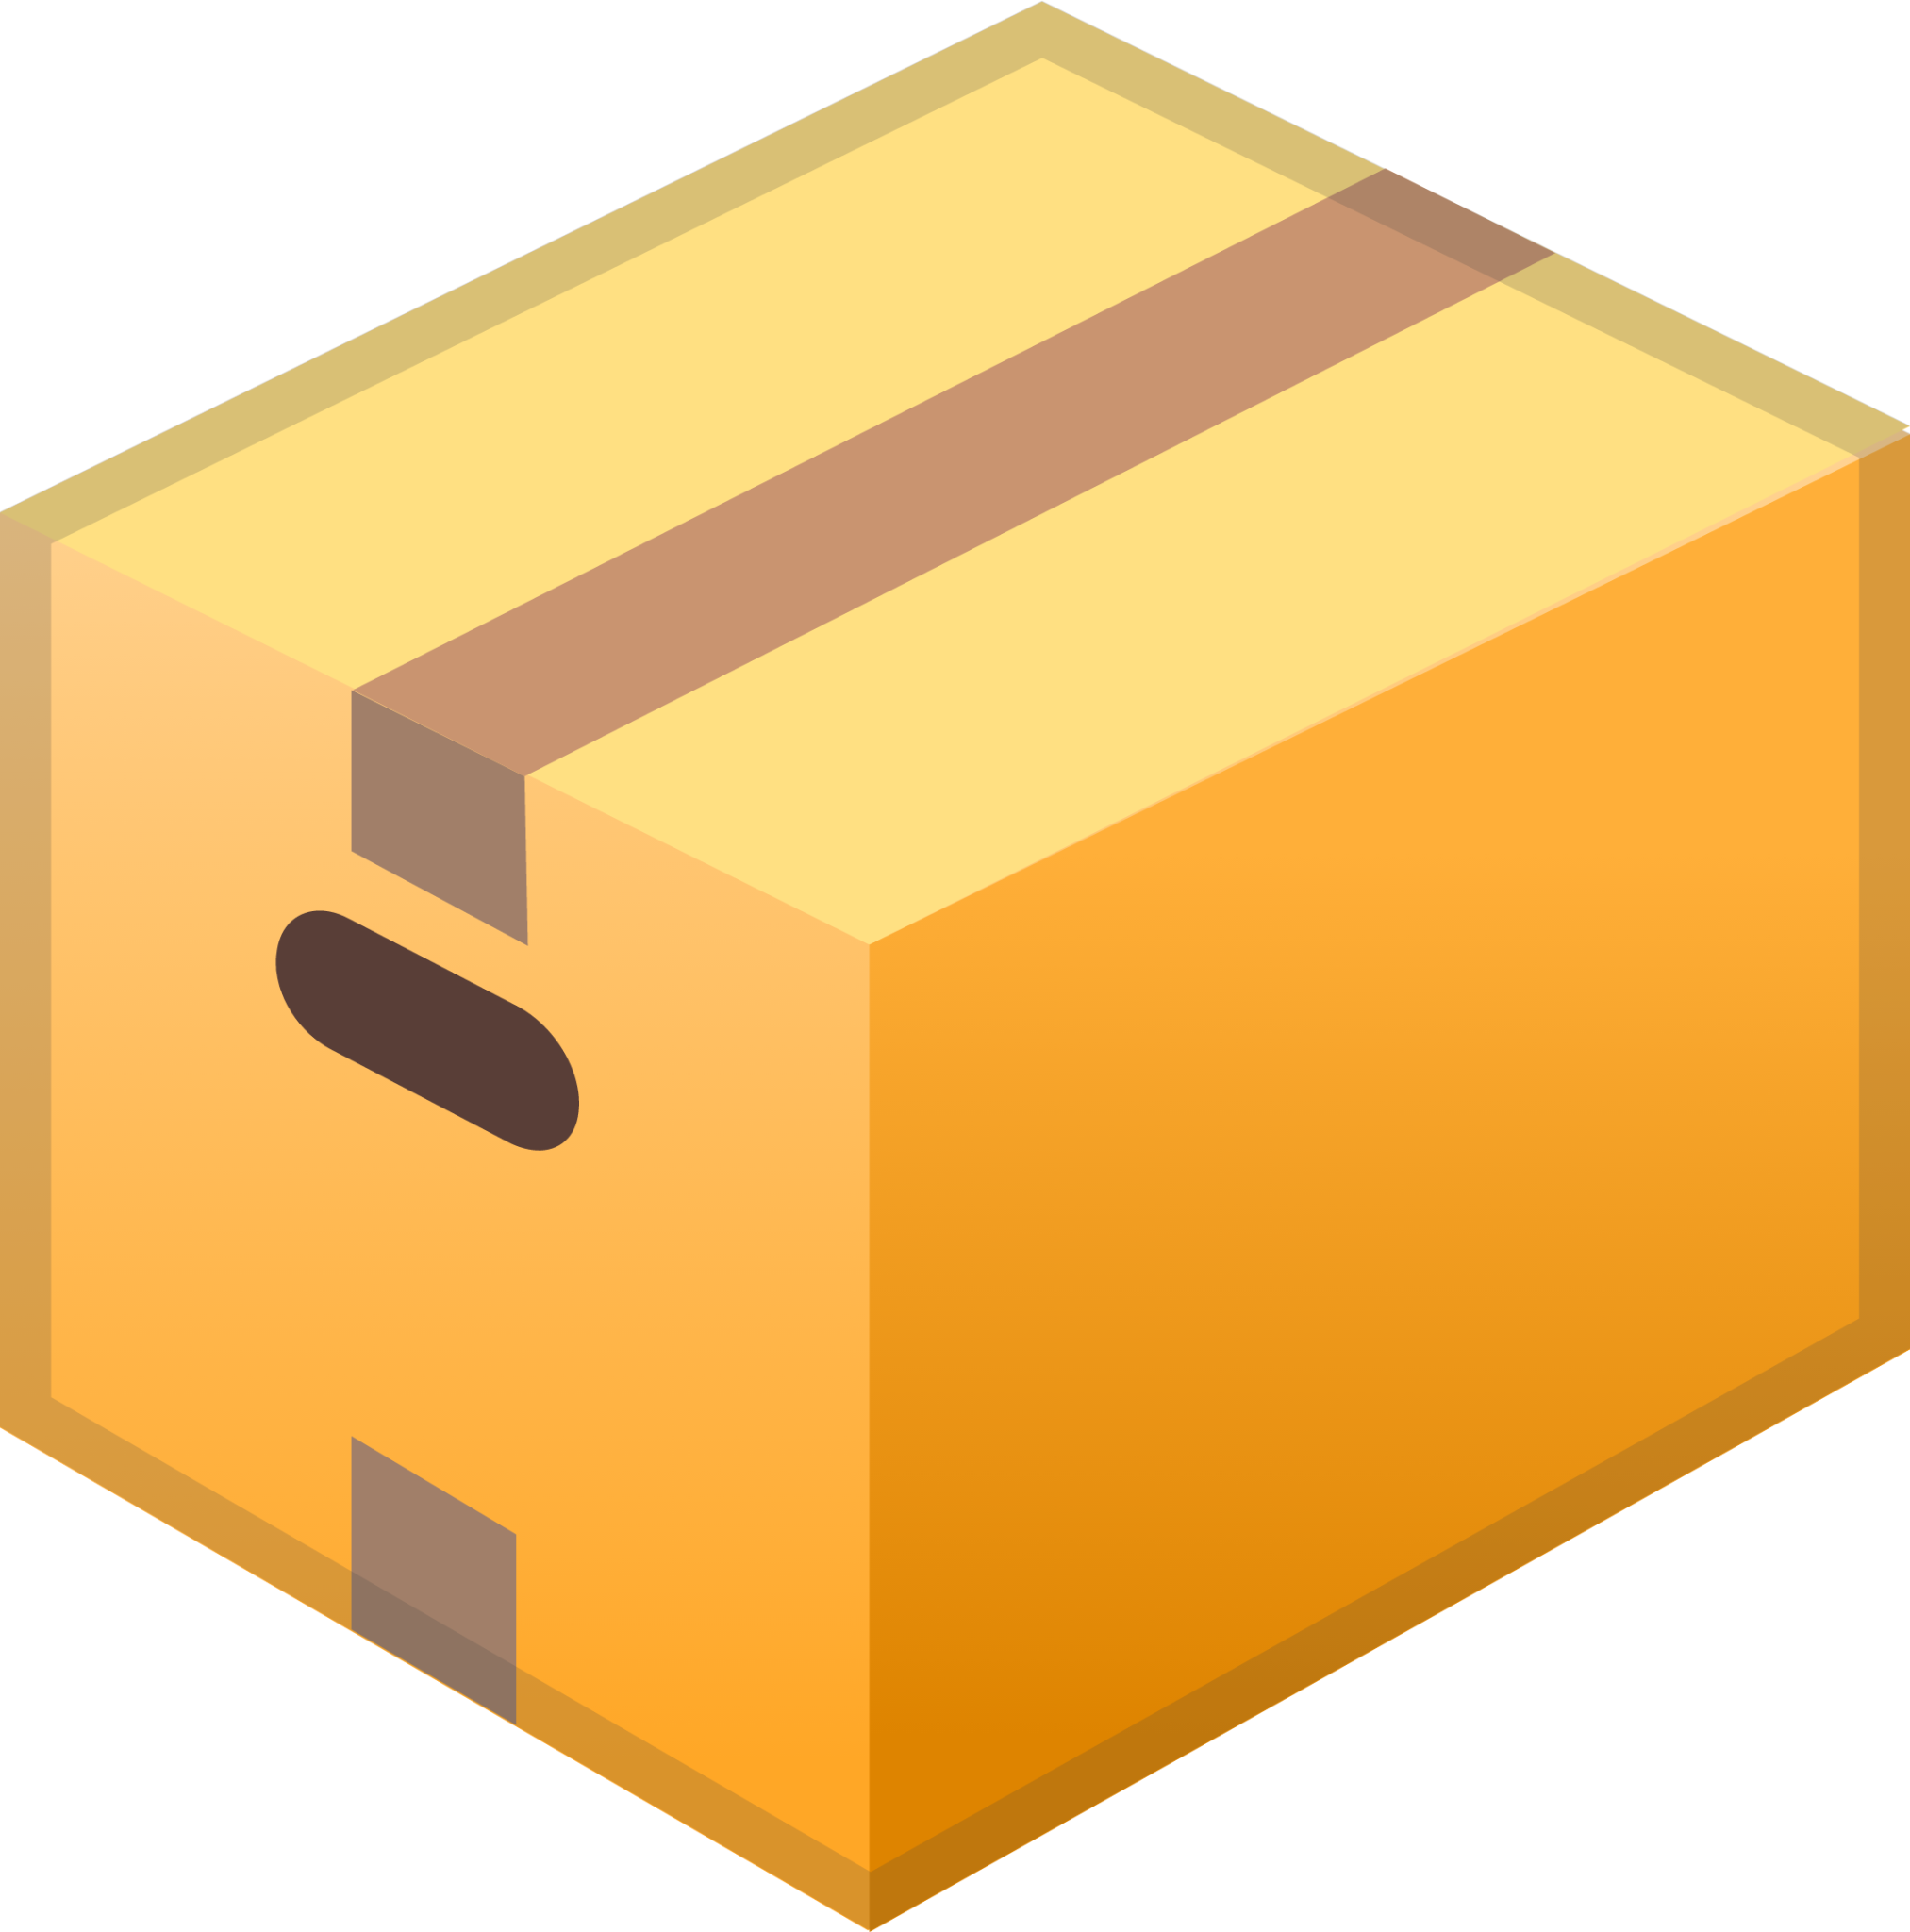 package emoji